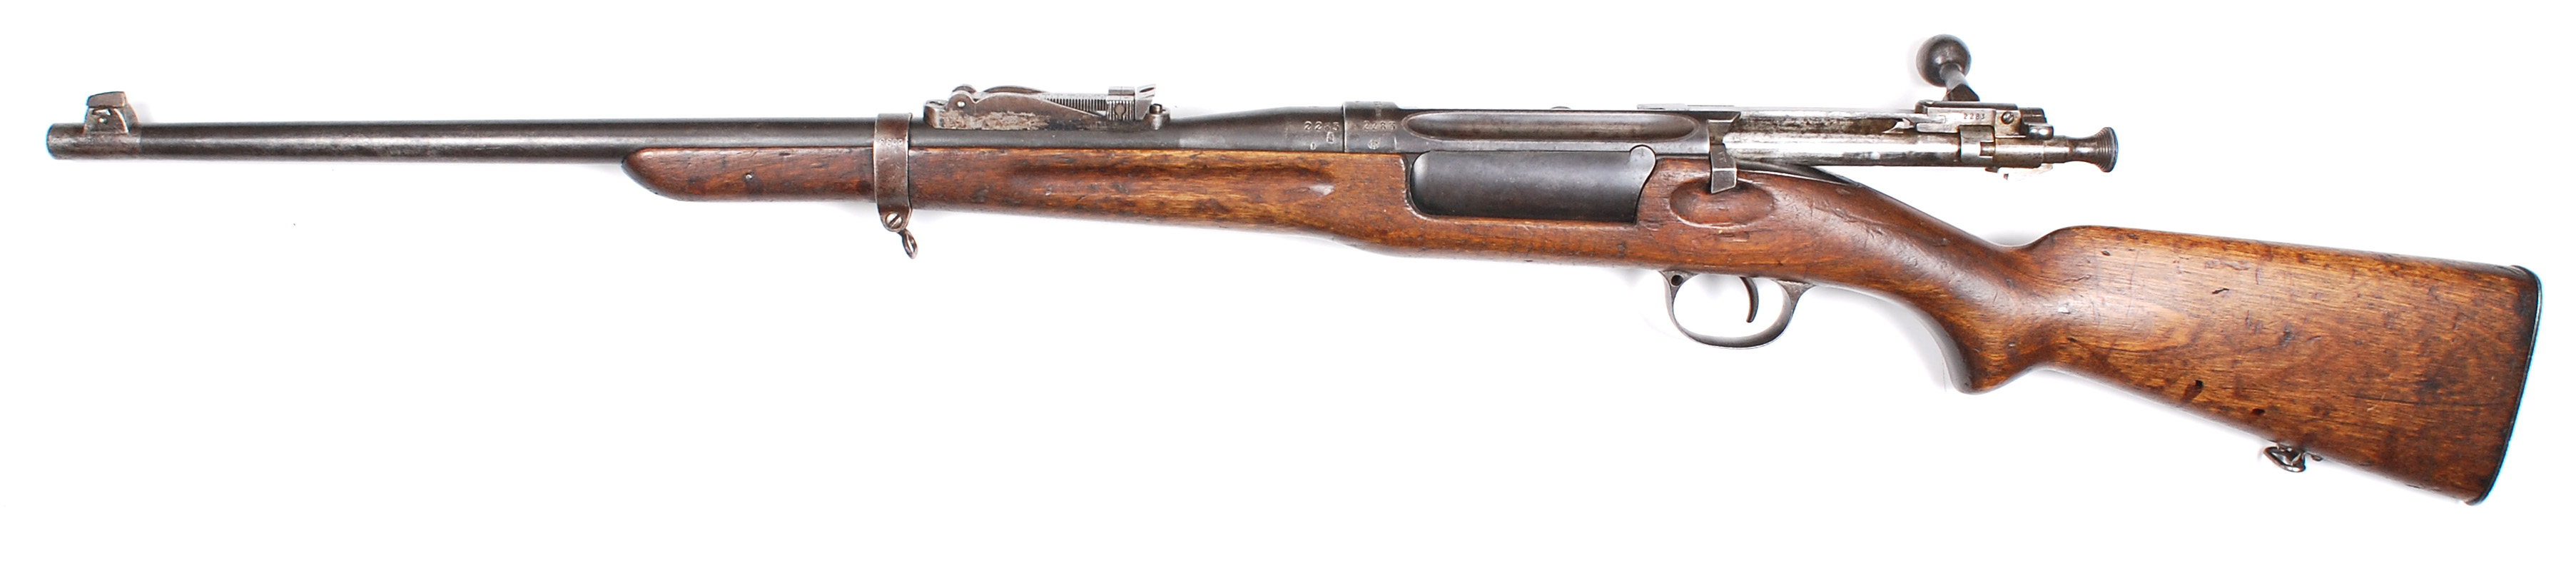 ./guns/rifle/bilder/Rifle-Kongsberg-Krag-M1906-2283-2.jpg